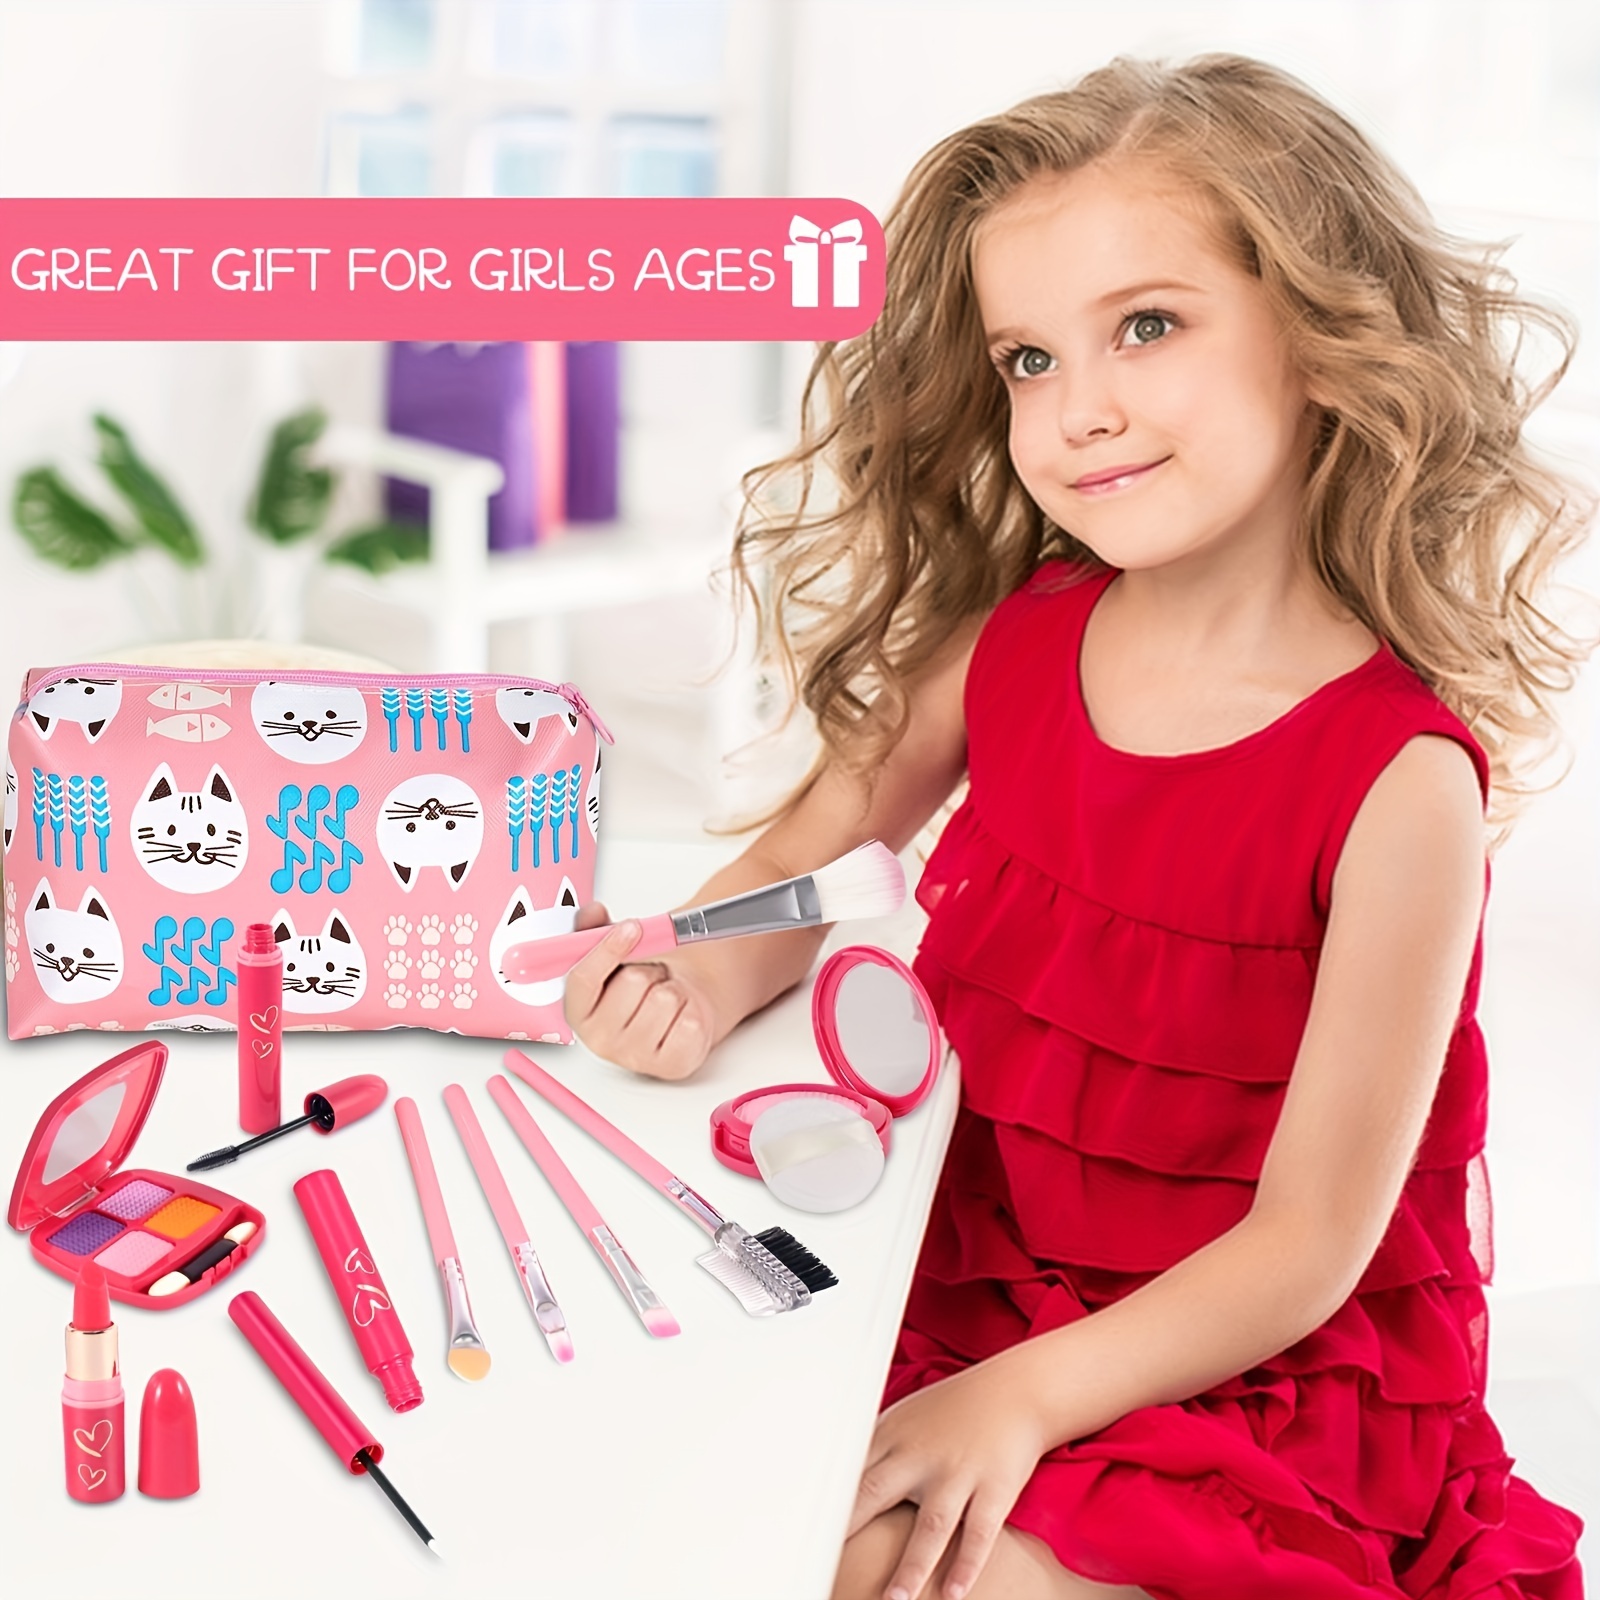 Kit de maquillage pour petite fille - Jeux de princesse